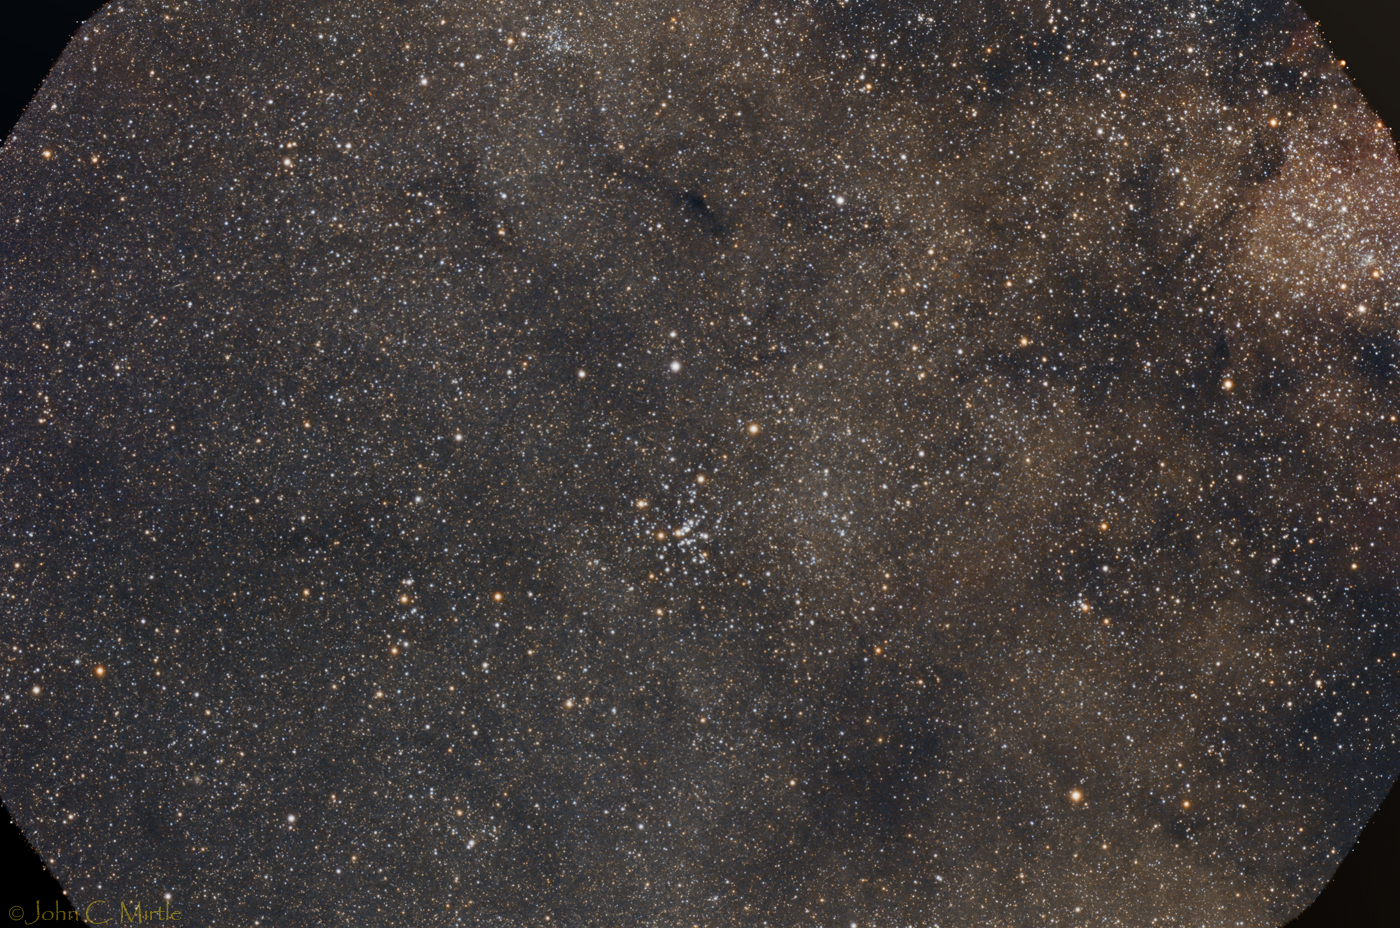 Messier 25